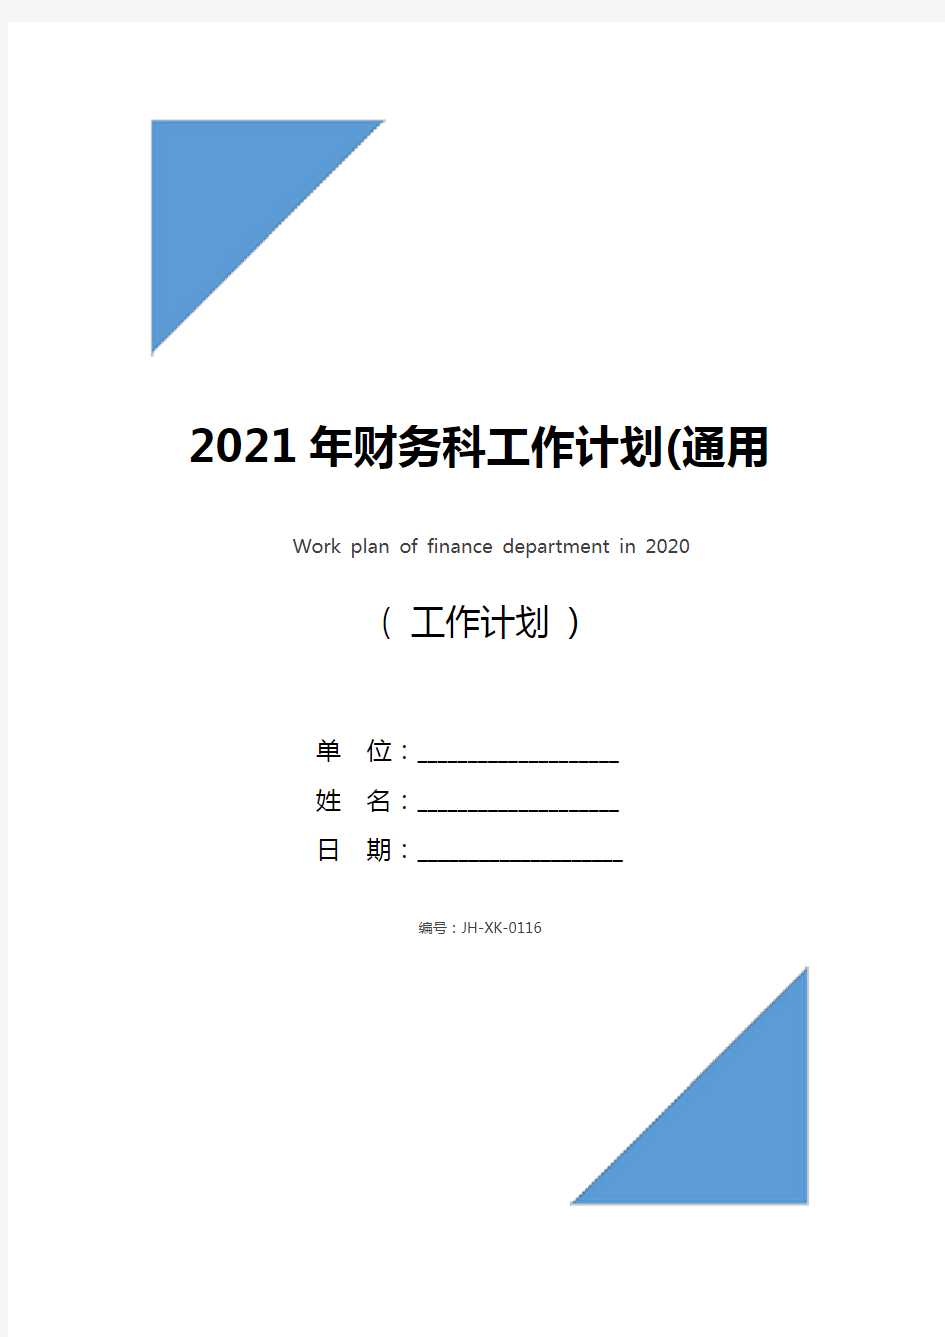 2021年财务科工作计划(通用版)